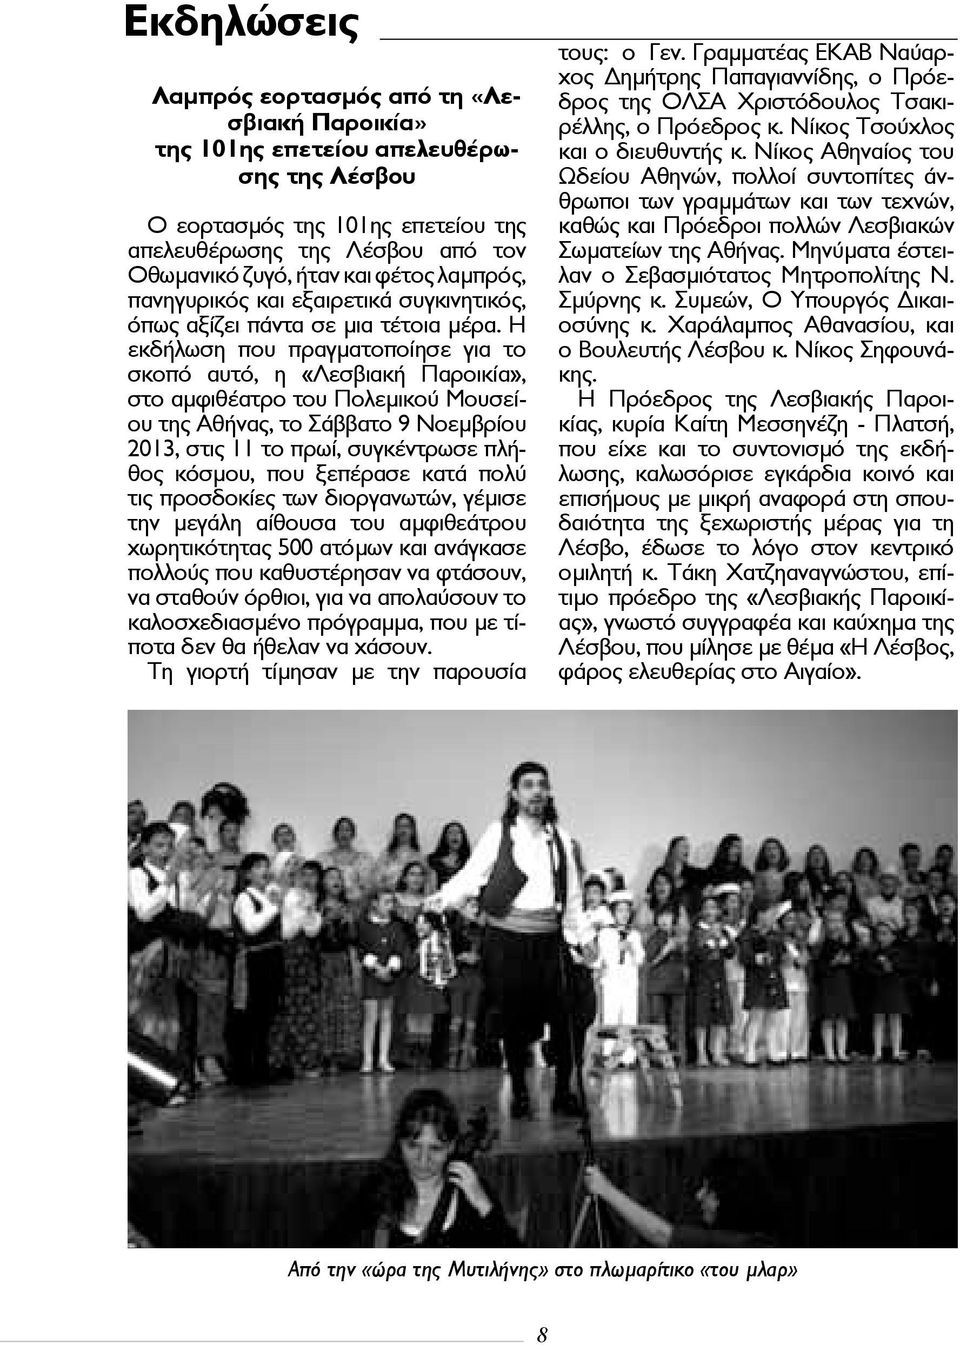 Η εκδήλωση που πραγματοποίησε για το σκοπό αυτό, η «Λεσβιακή Παροικία», στο αμφιθέατρο του Πολεμικού Μουσείου της Αθήνας, το Σάββατο 9 Νοεμβρίου 2013, στις 11 το πρωί, συγκέντρωσε πλήθος κόσμου, που